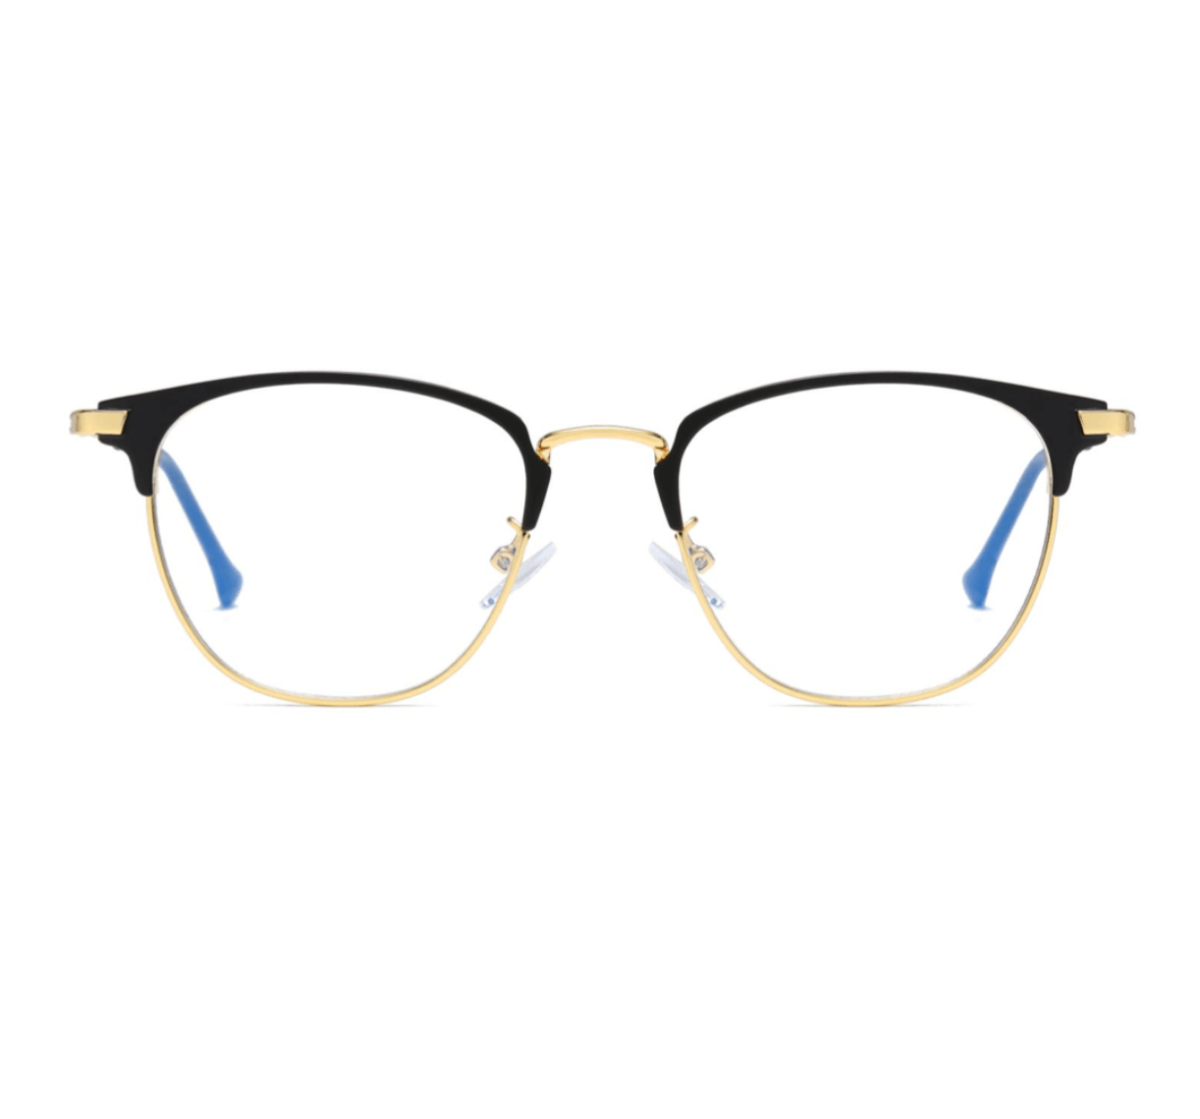 Custom Glasses Frames and Spectacle Frames Manufacturer